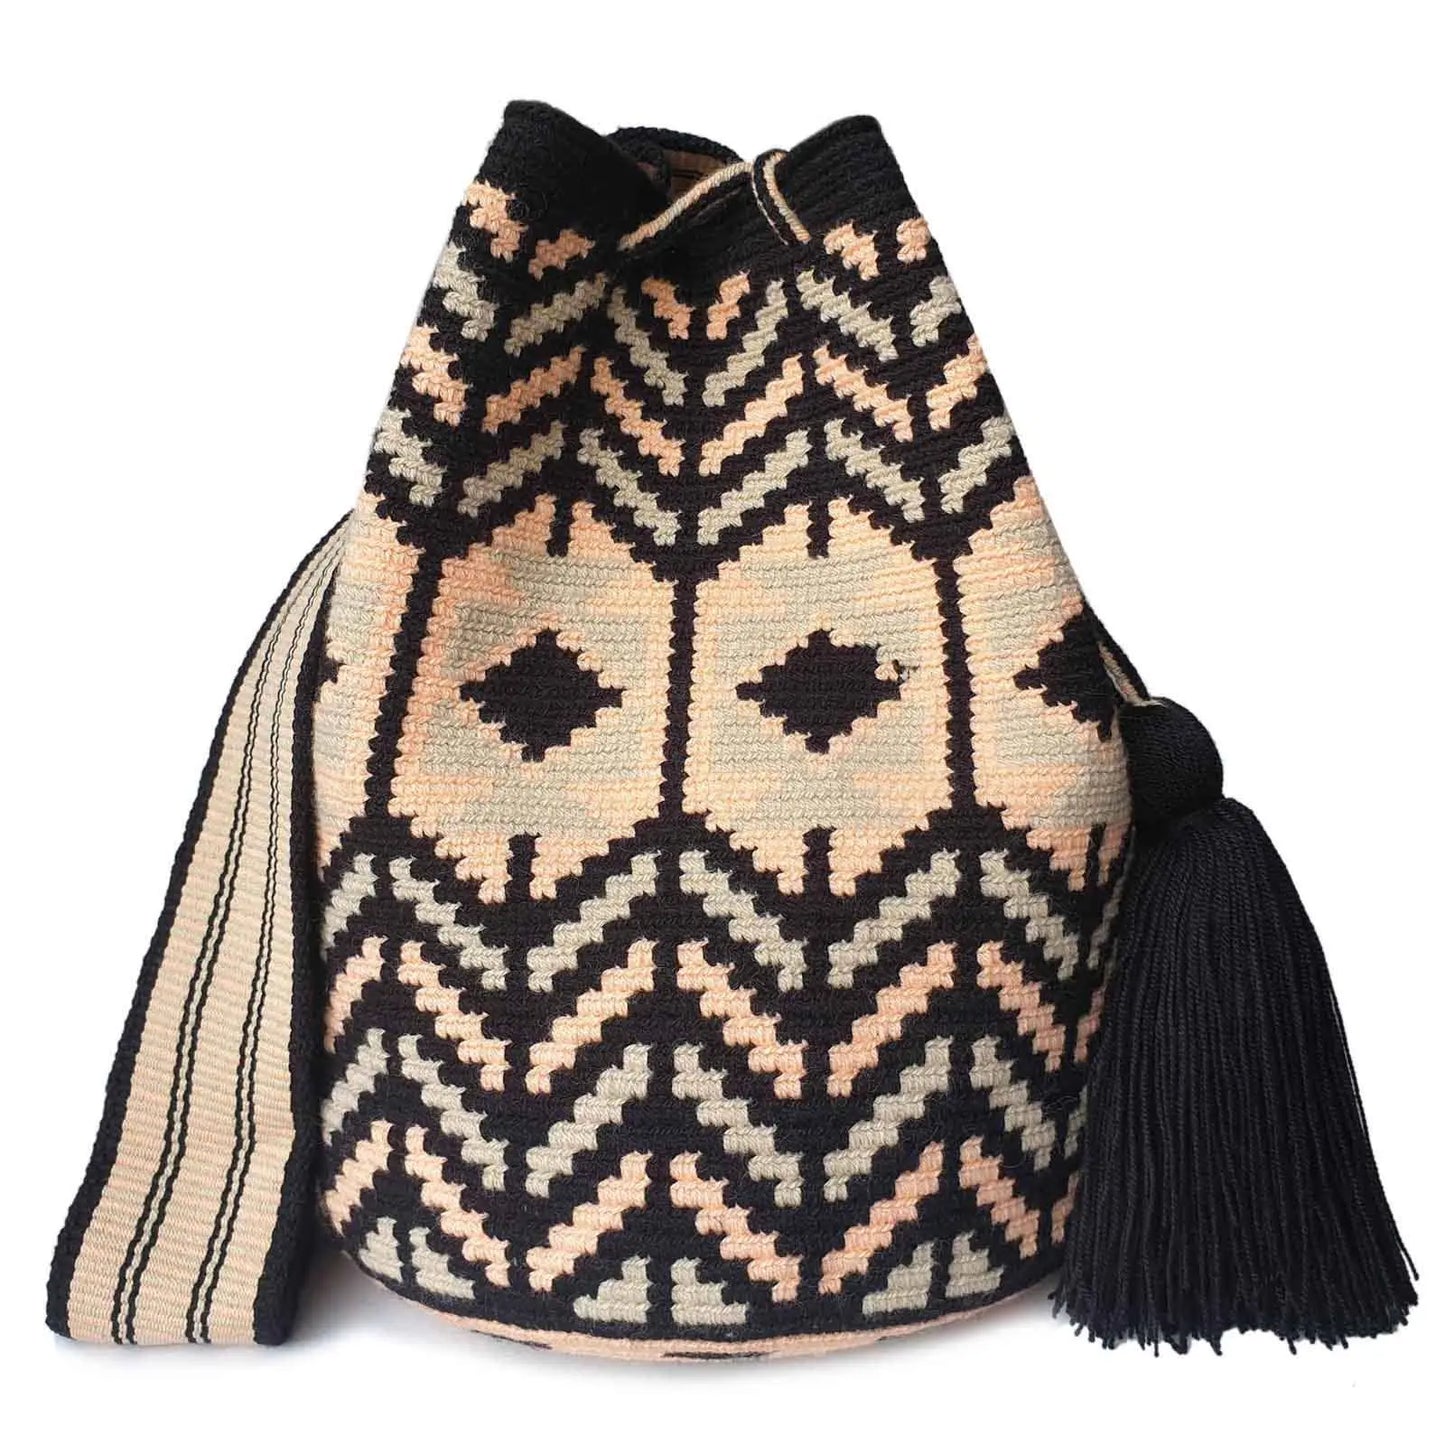 Lombia + Co. - Fluida Wayuu Crochet Crossbody / Size: L Lombia + Co.